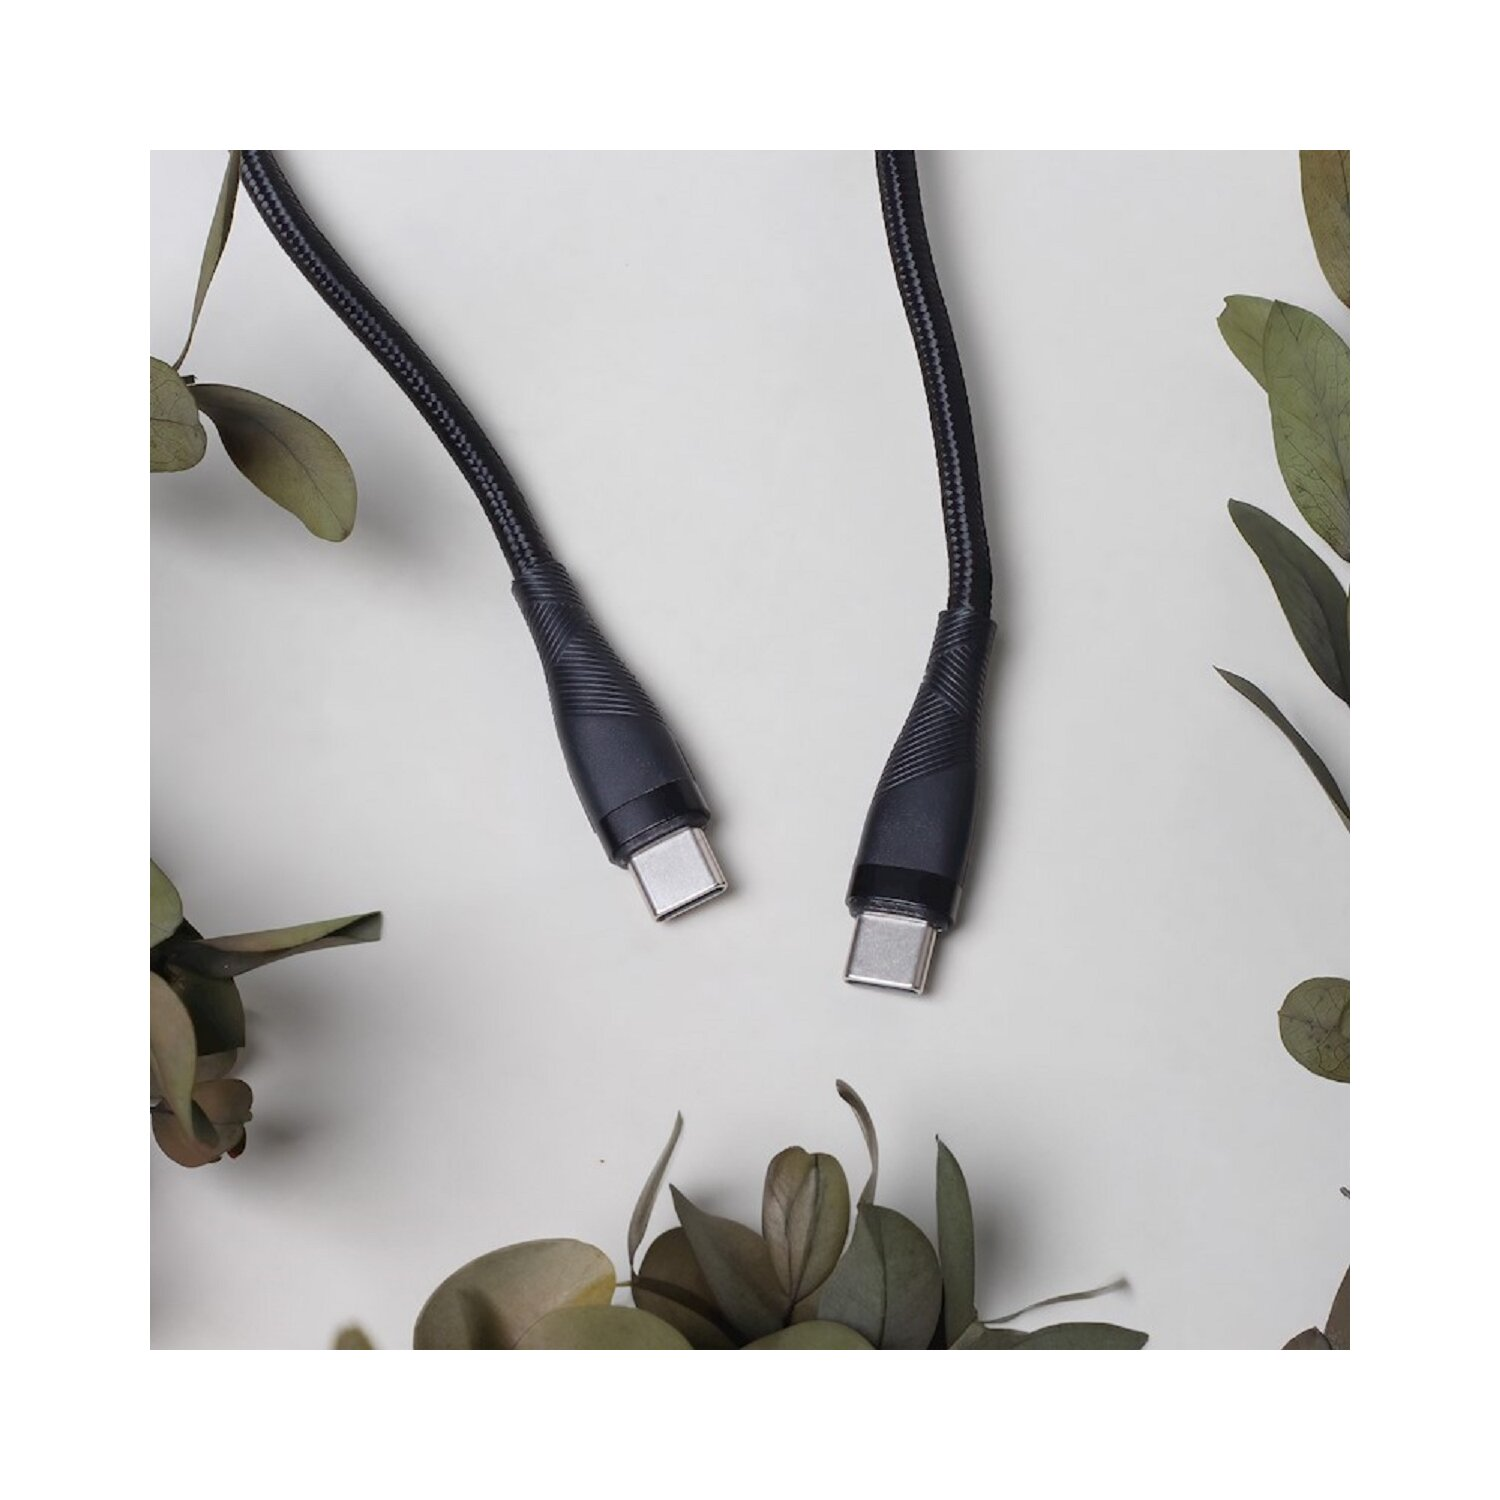 MAXLIFE MXUC-08 Kabel USB-C - Ladekabel, Schwarz USB-C 1,0 m